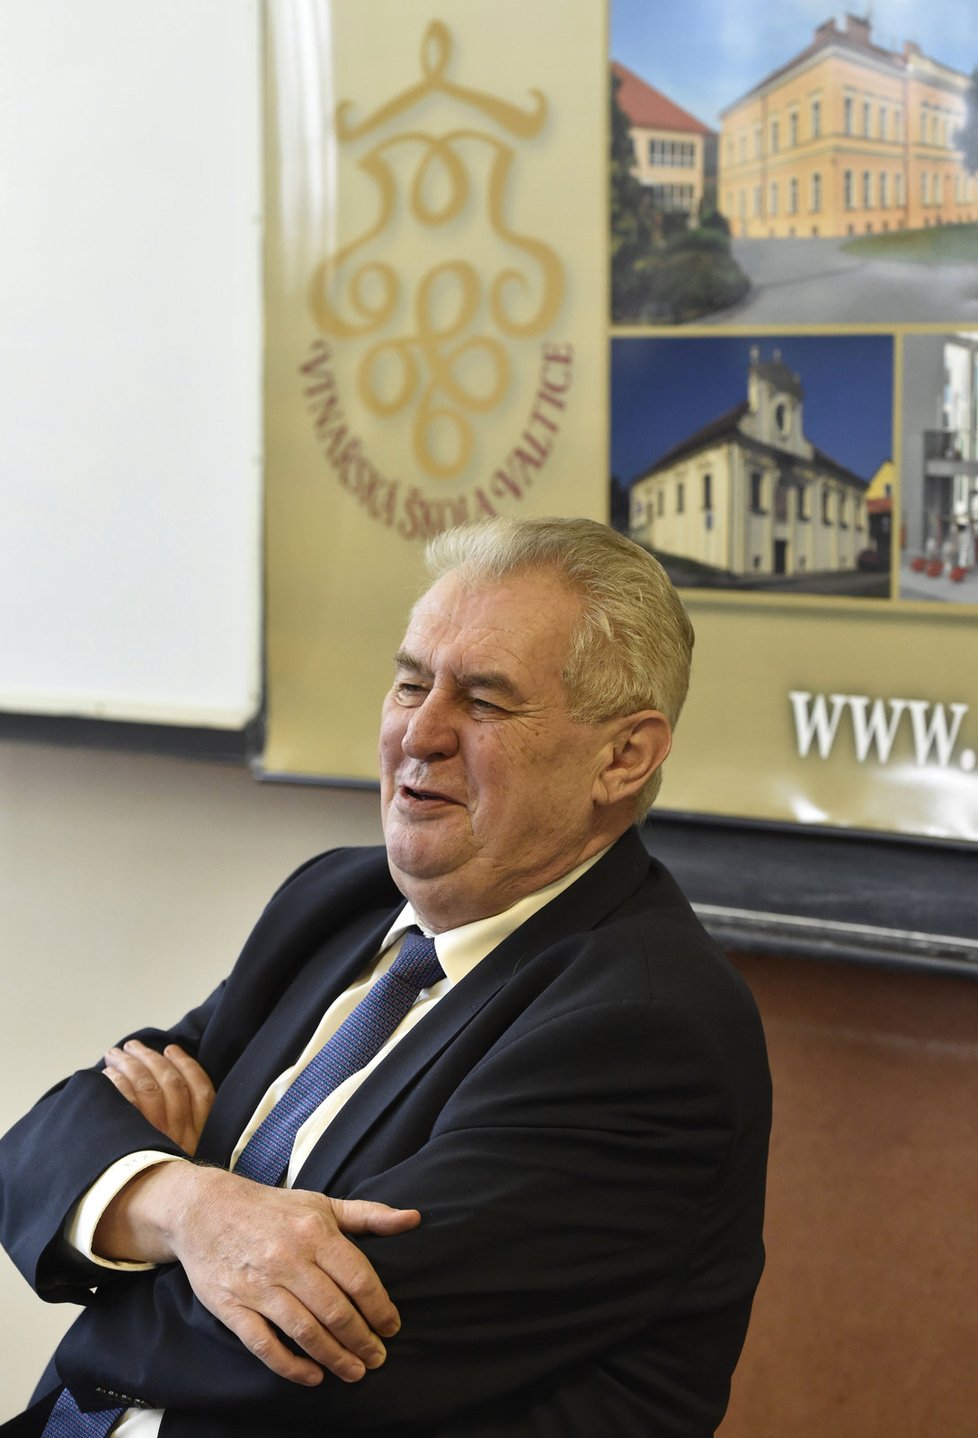 Prezident Miloš Zeman při návštěvě Střední školy vinařské ve Valticích